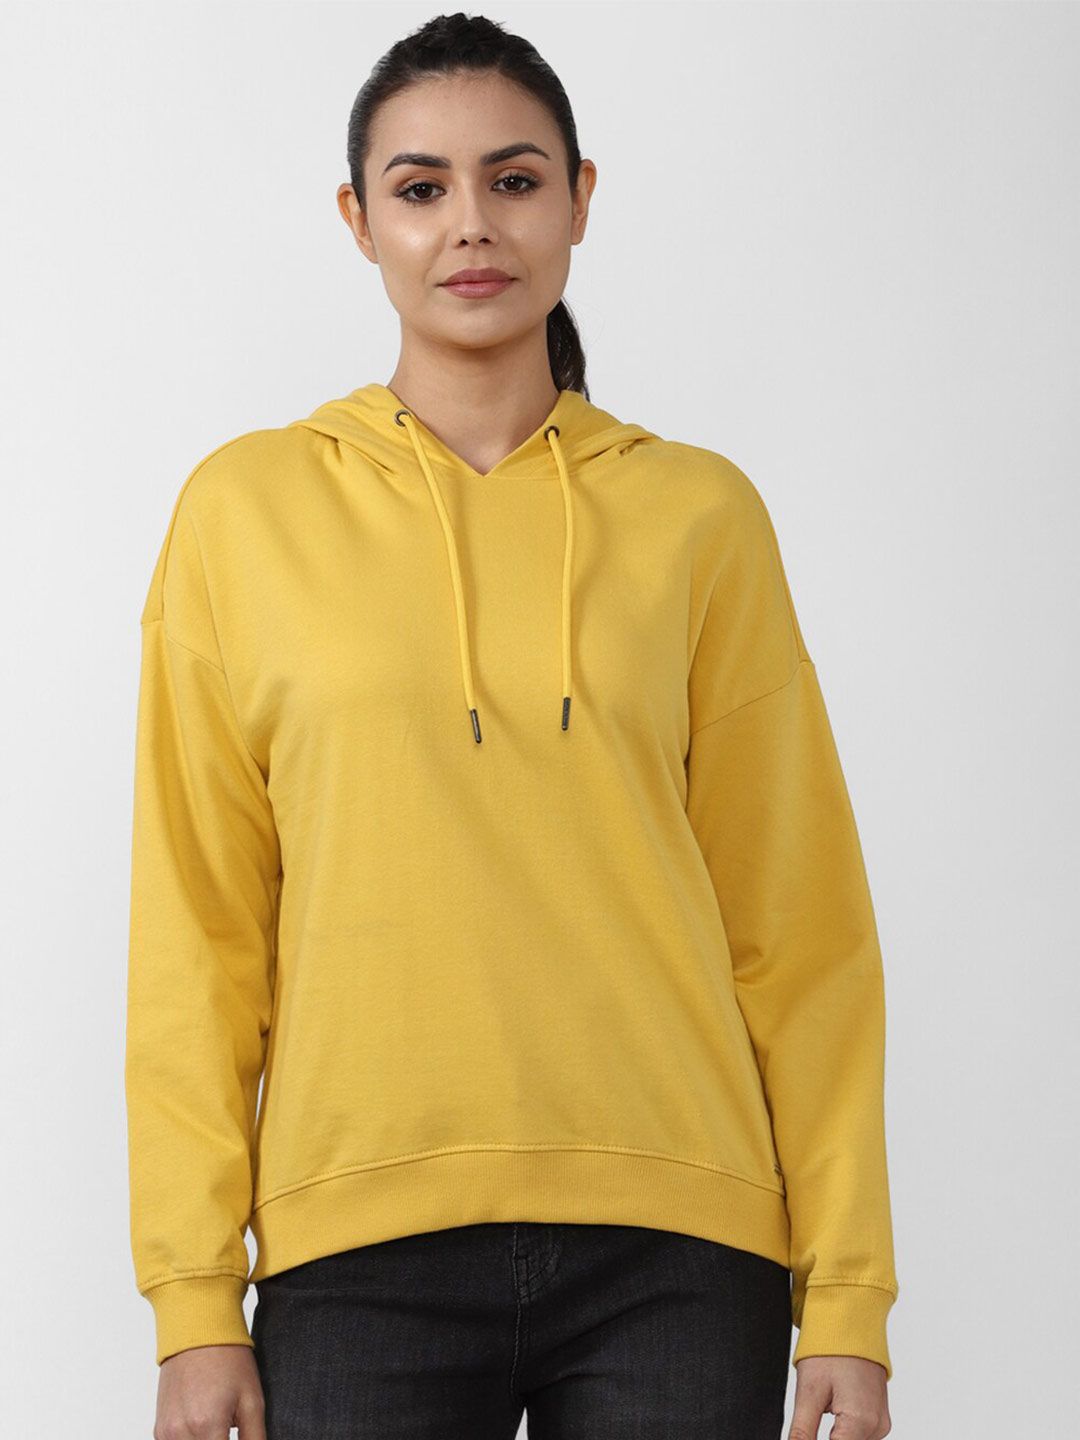 Van Heusen Women Yellow Hooded Sweatshirt Price in India